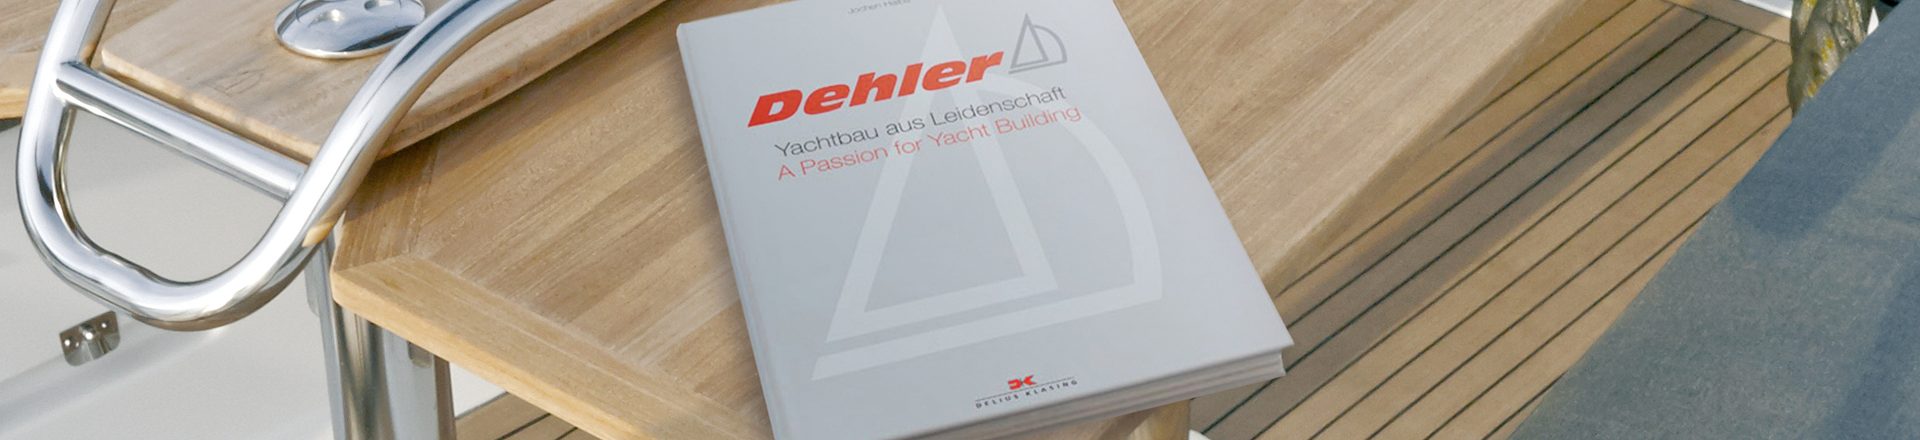 Dehler-50Jahre-Buch